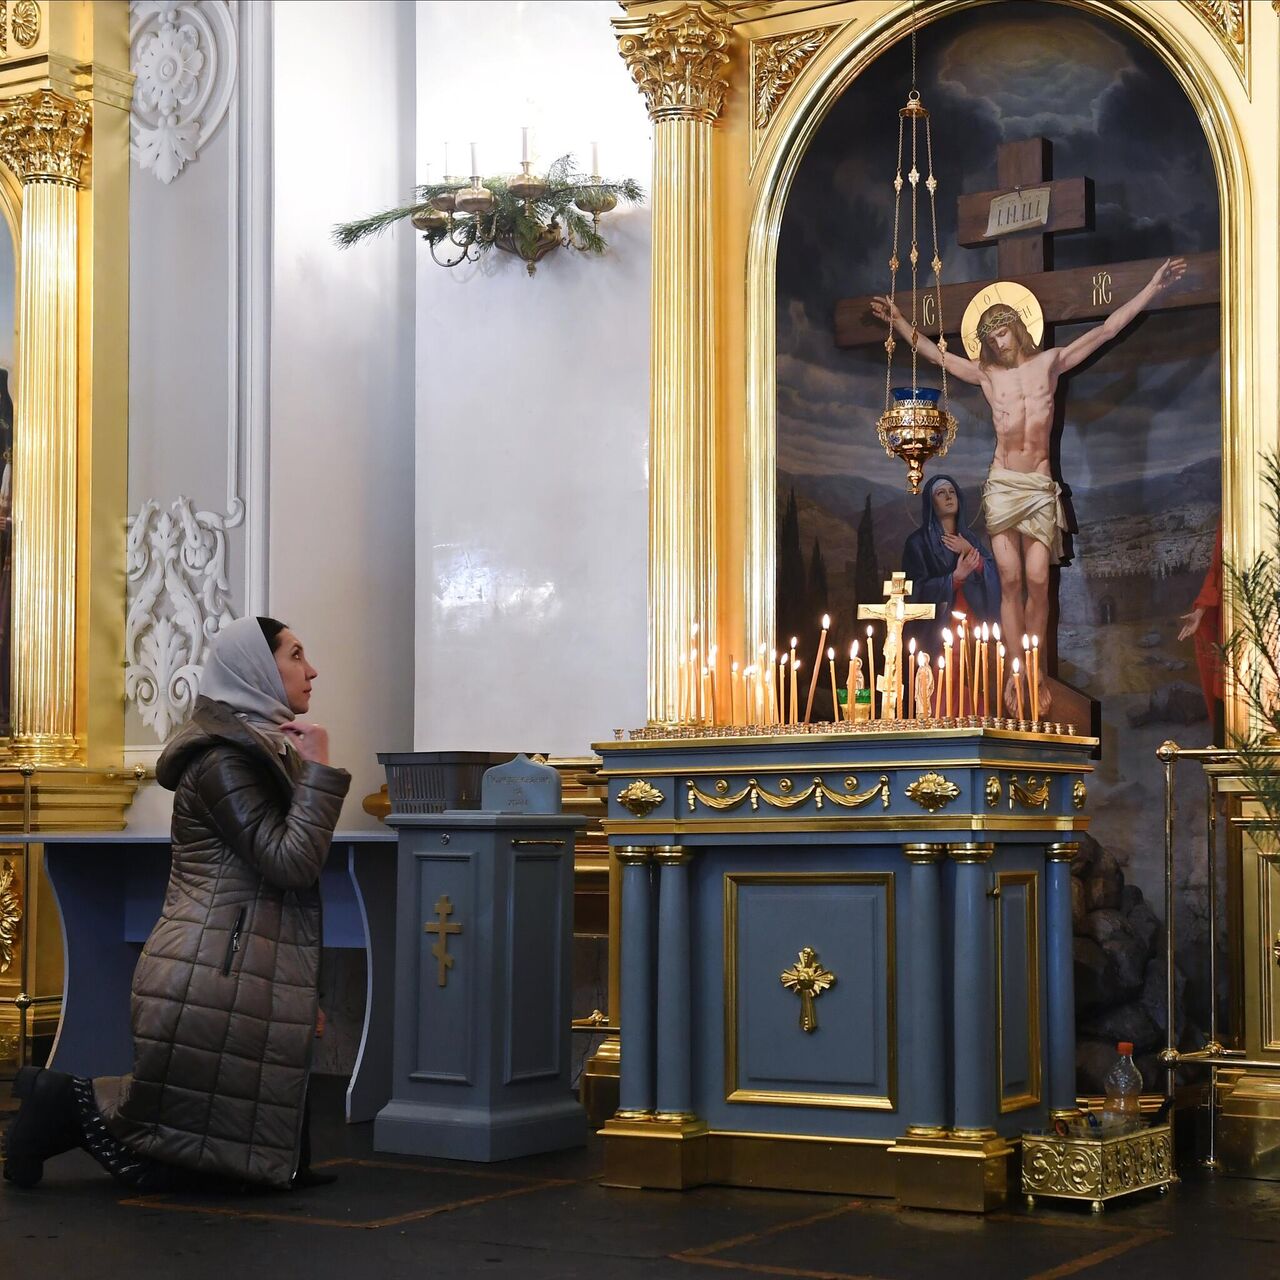 Полный православный молитвослов на всякую потребу